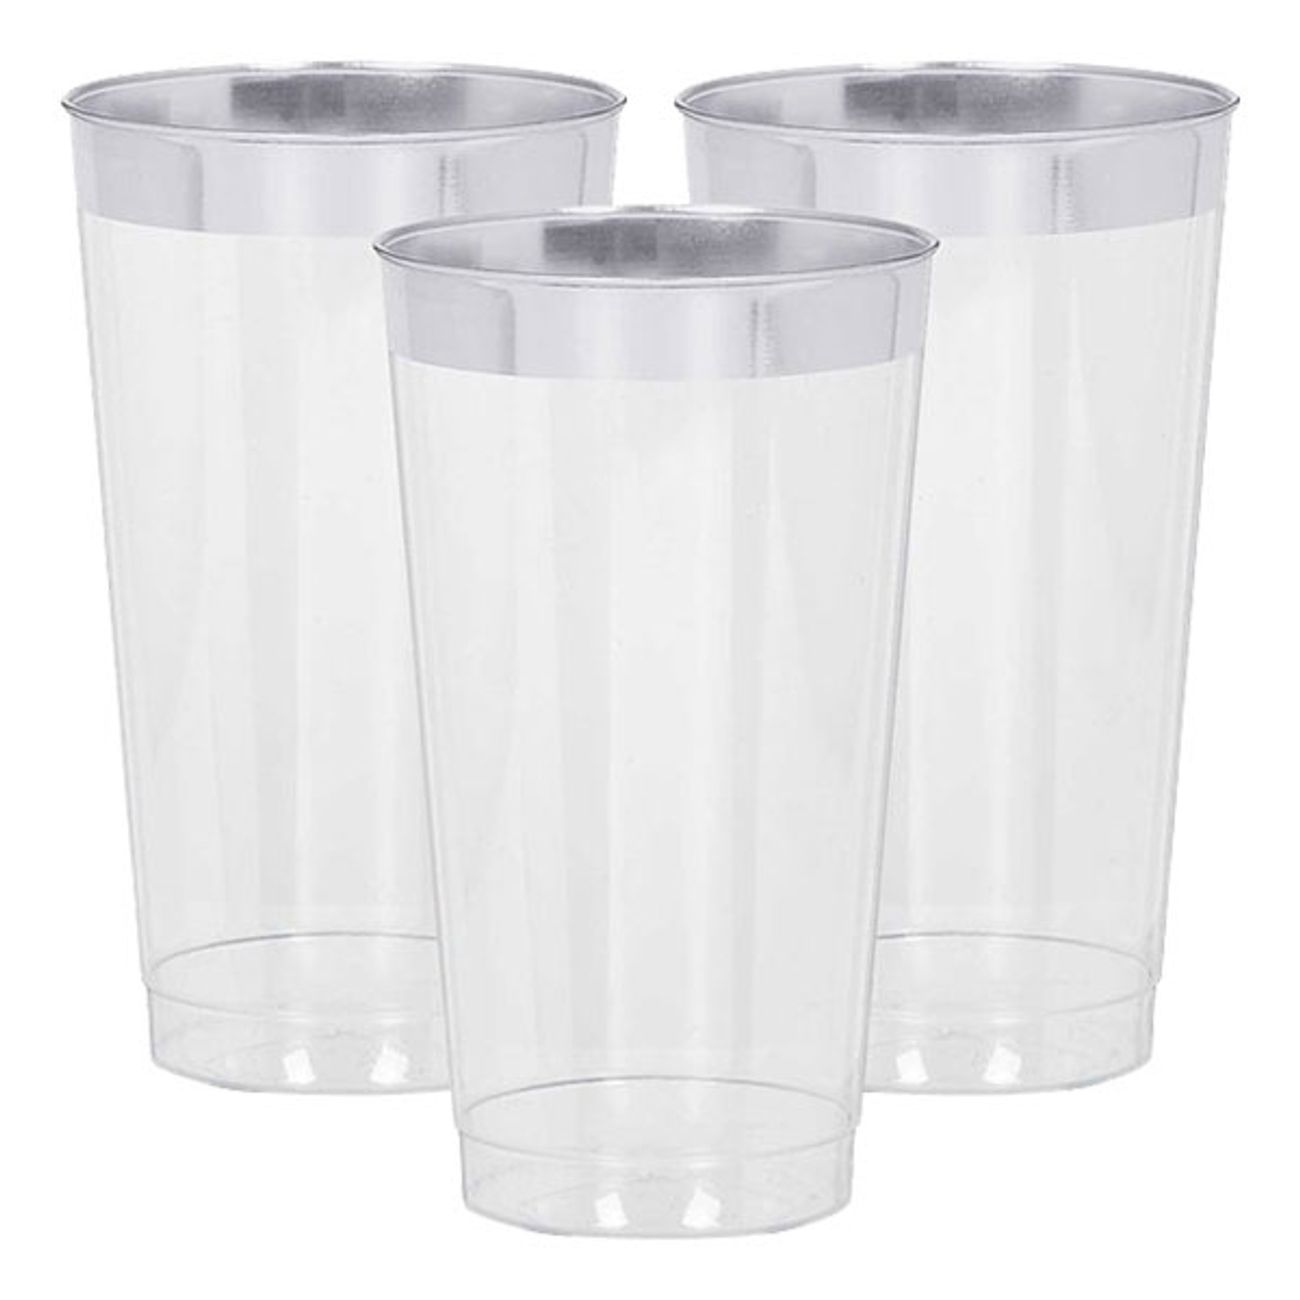 drinkglas-i-plast-premium-silverkant-1